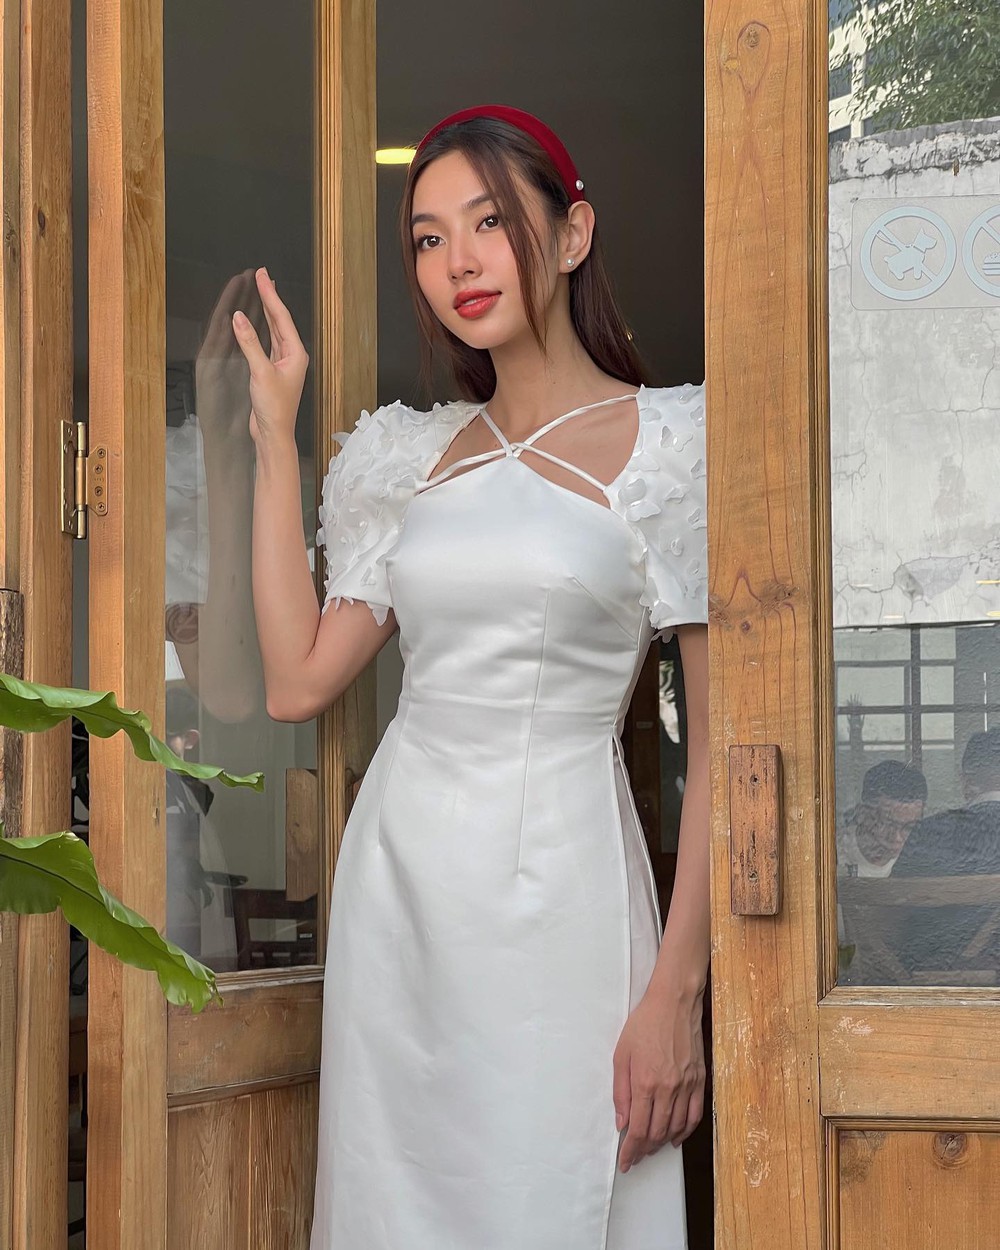 Mê mệt loạt áo dài Tết của Hoa hậu Thùy Tiên: Toàn đồ local brand quen mặt, thiết kế điệu đà cứ diện là xinh - Ảnh 3.